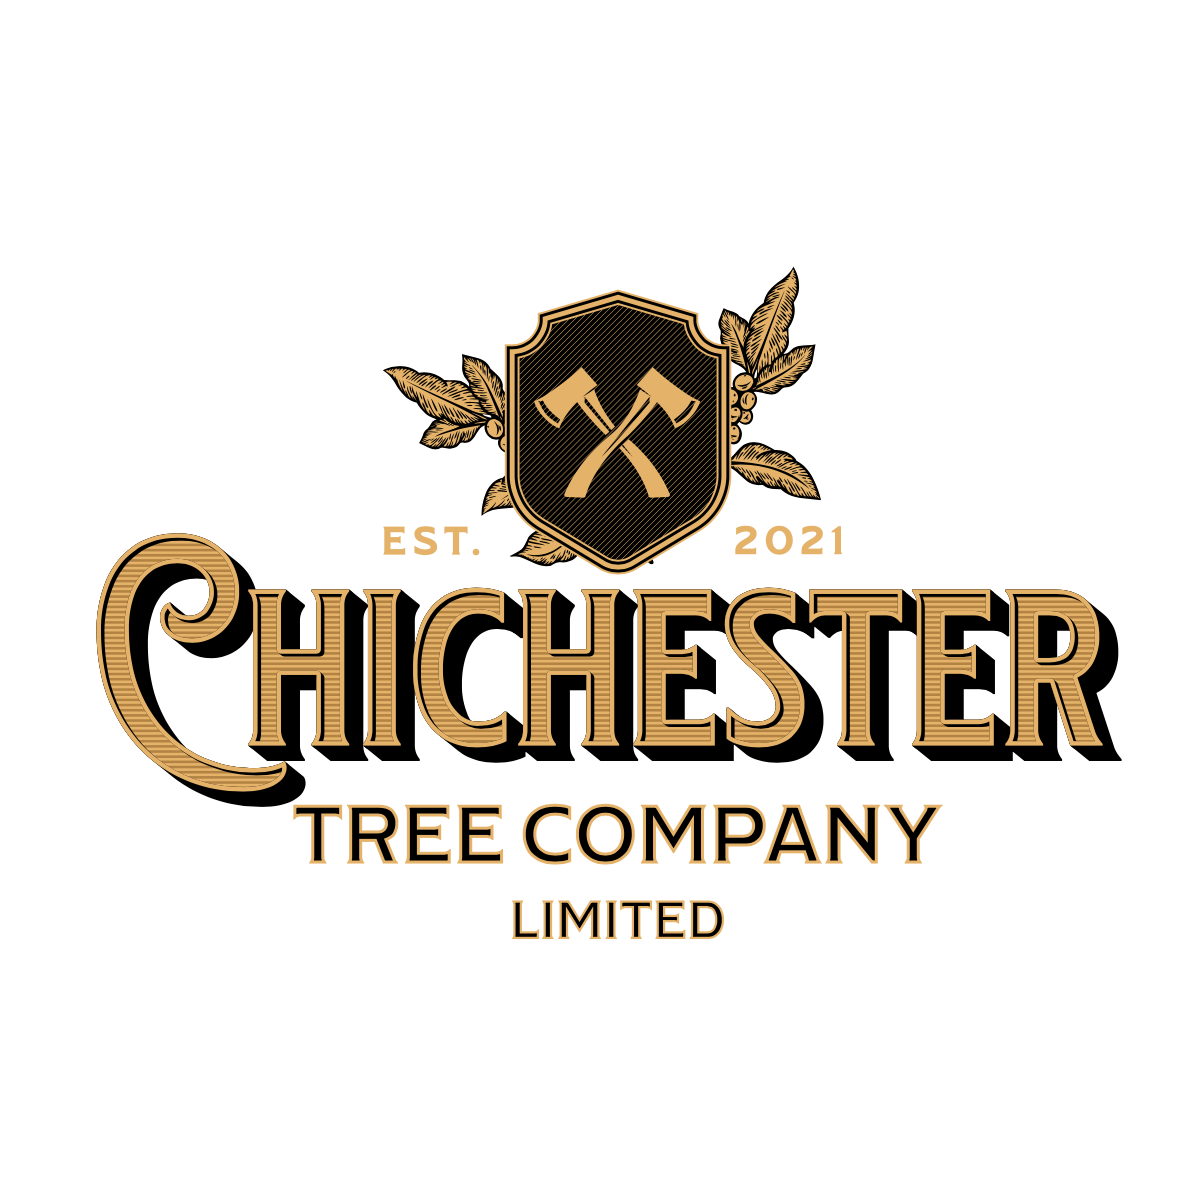 Chichester Tree Company Ltd.